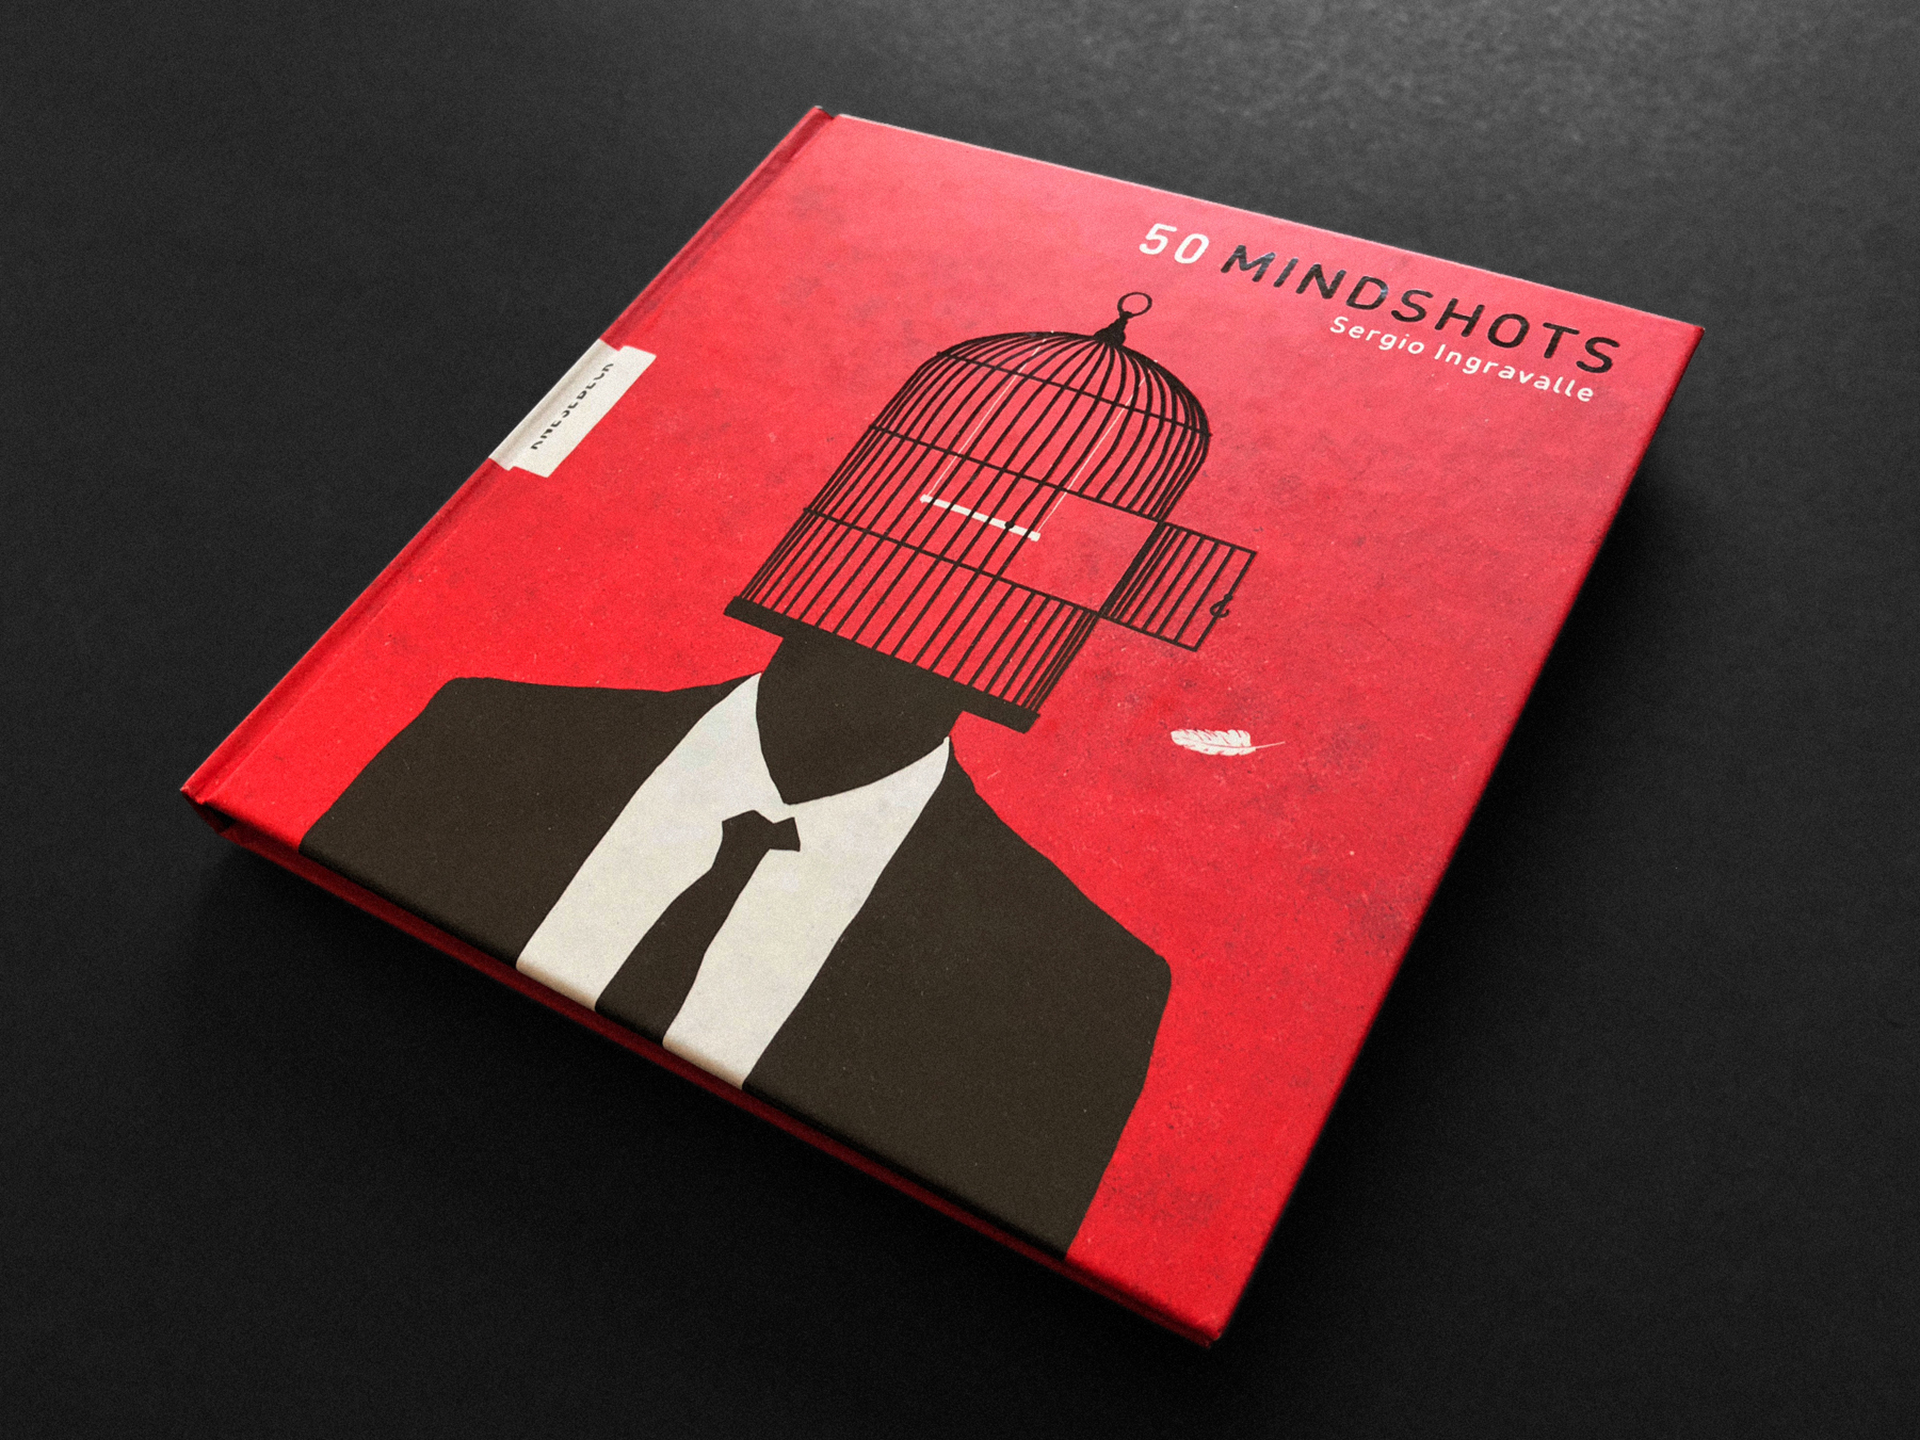 50 Mindshots – Von Sergio Ingravalle ()